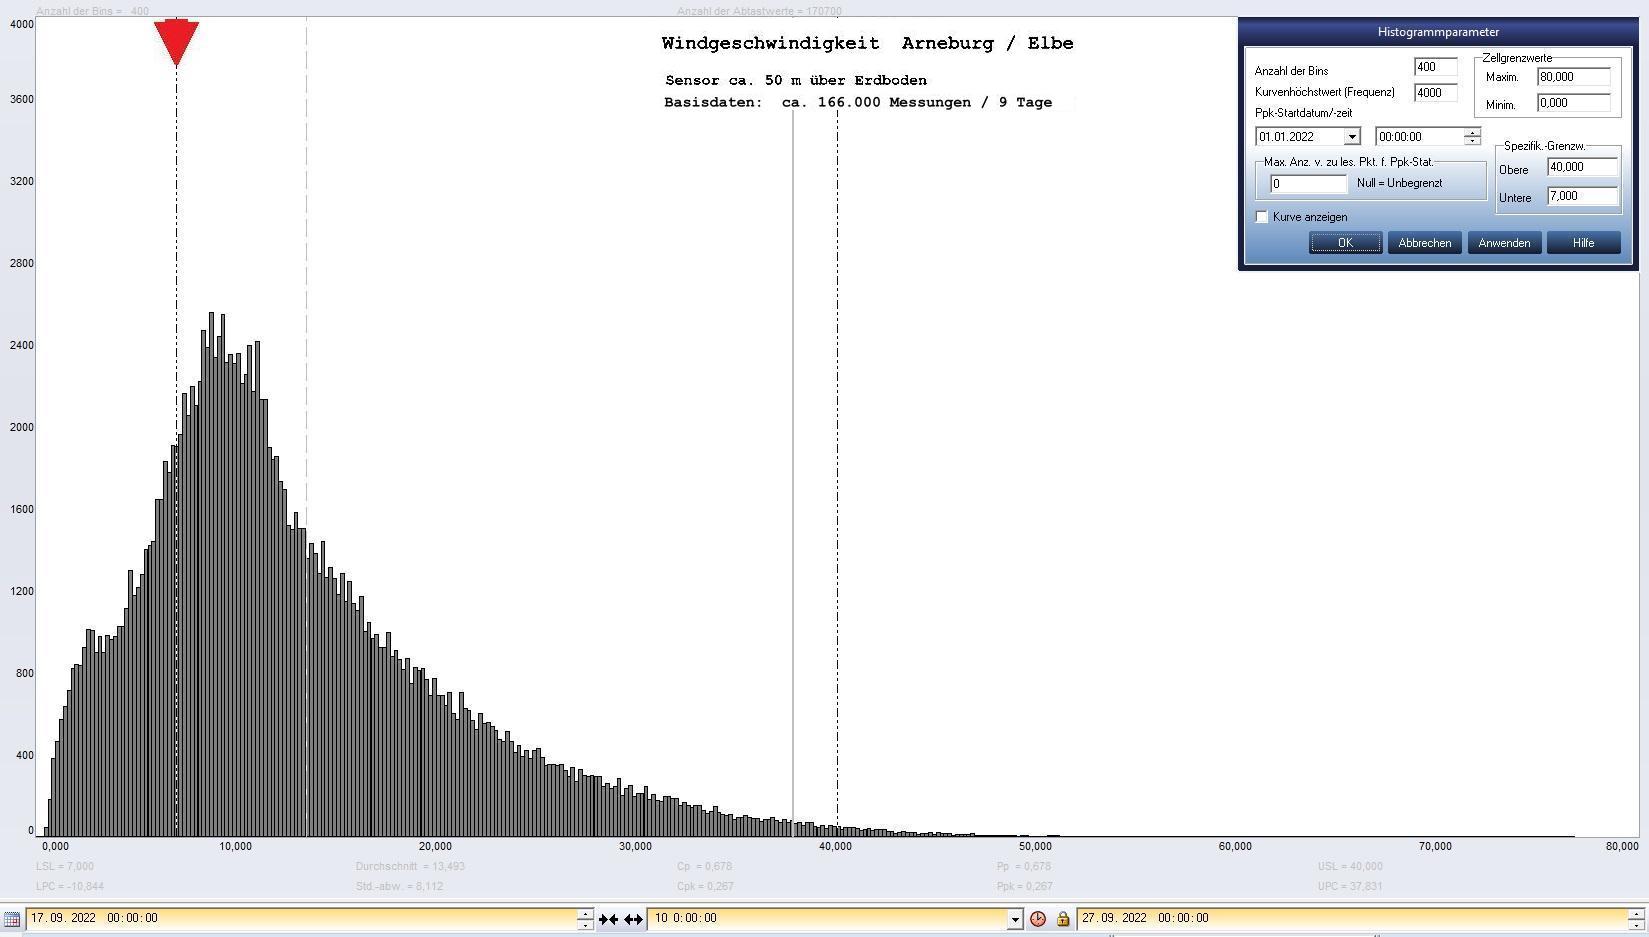 Arneburg 9 Tage Histogramm Winddaten, ab 17.09.2022 
  Sensor auf Gebude, ca. 50 m ber Erdboden, Basis: 5s-Aufzeichnung